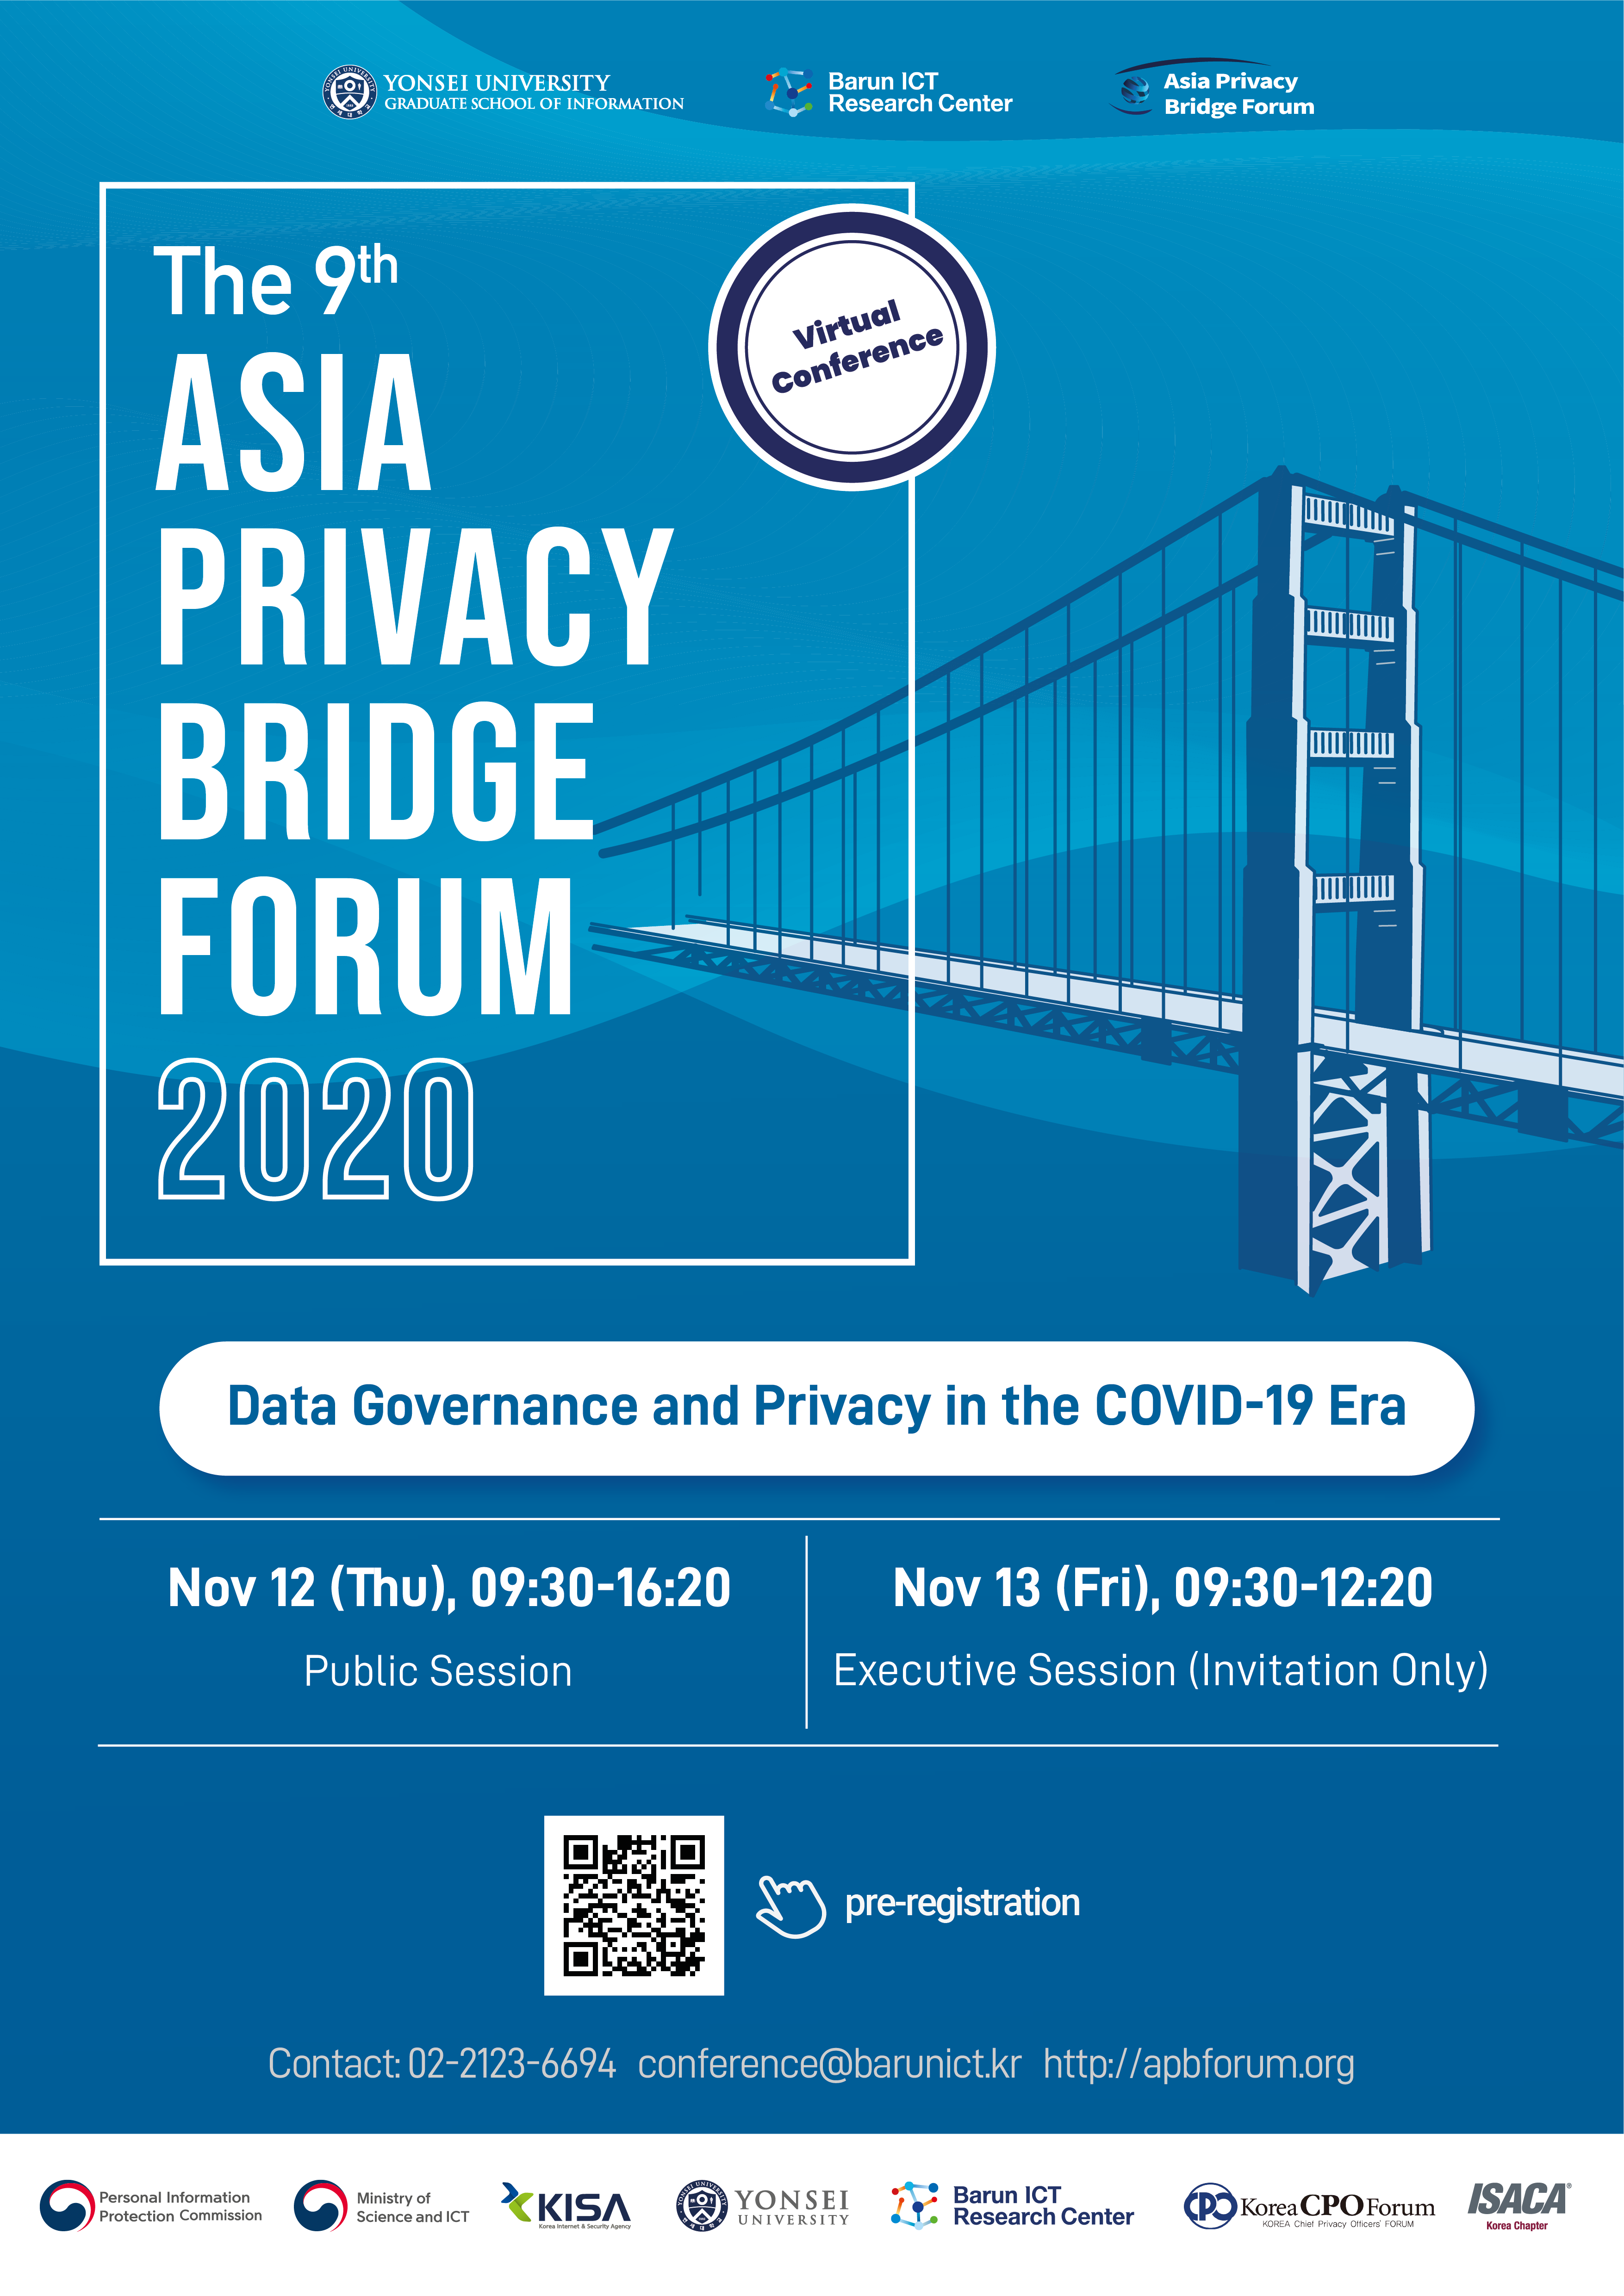 The 9th Asia Privacy Bridge Forum, 2020